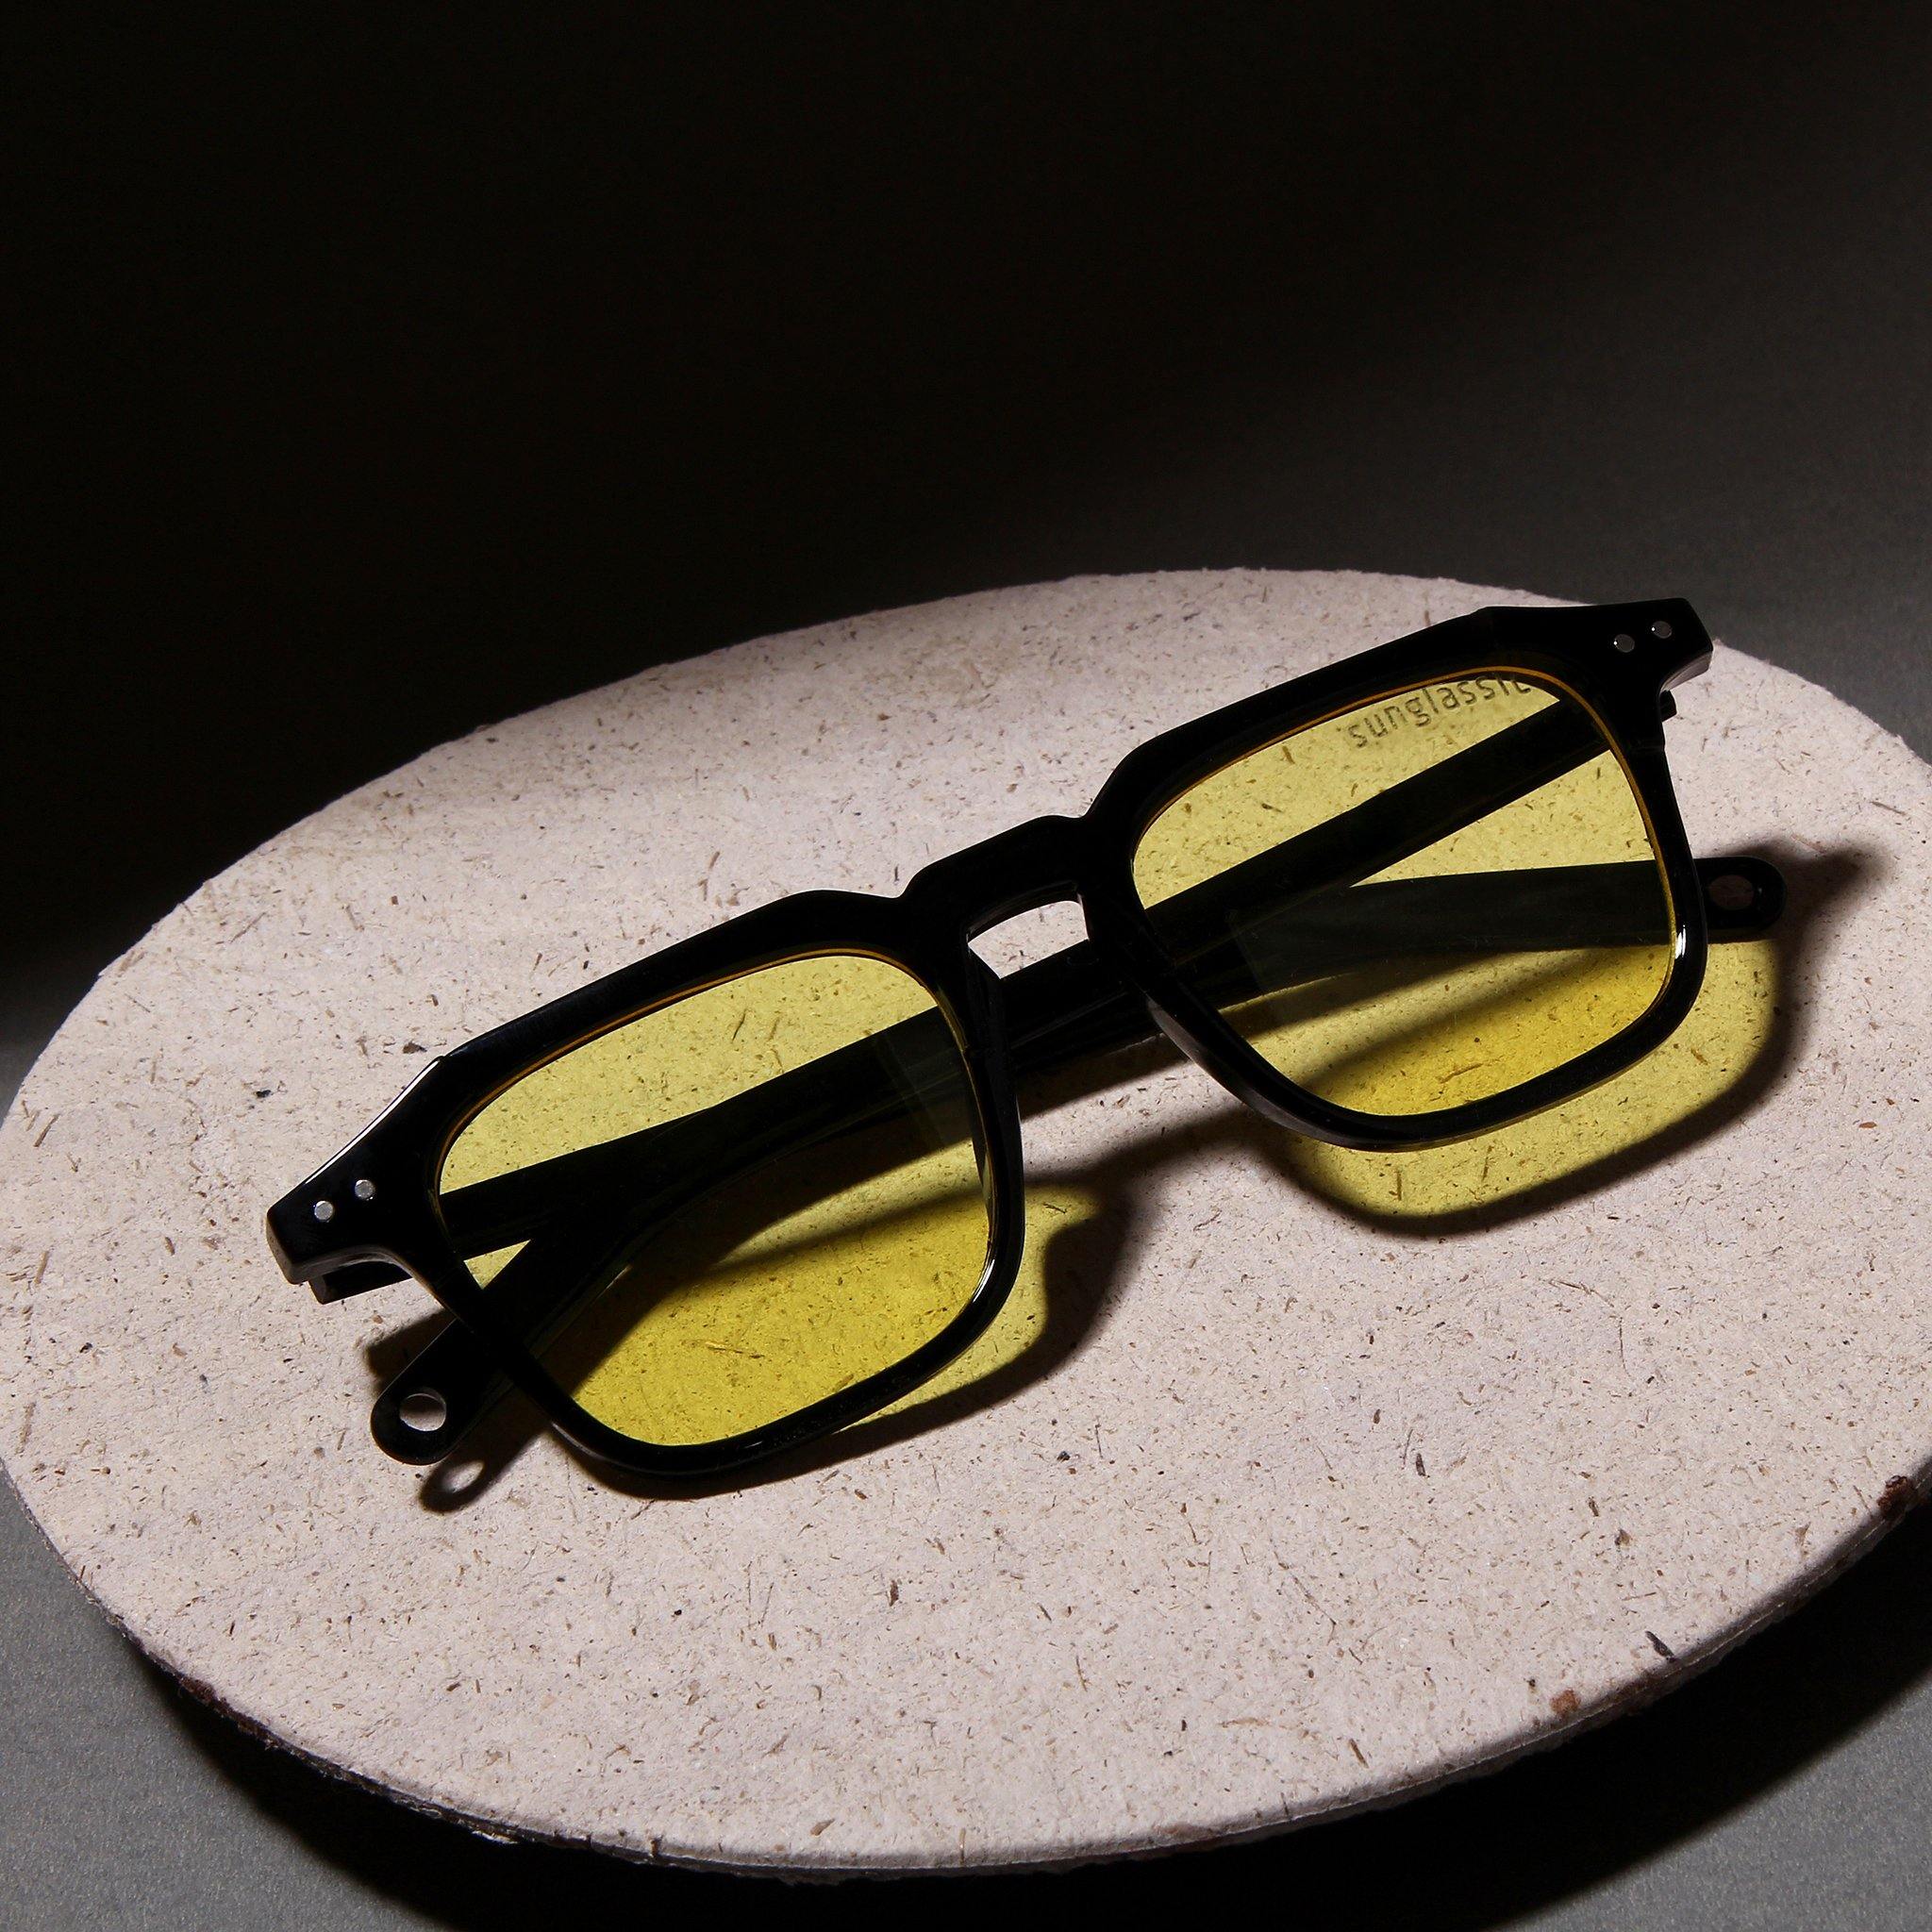 Kingsman Black Yellow Square Sunglasses